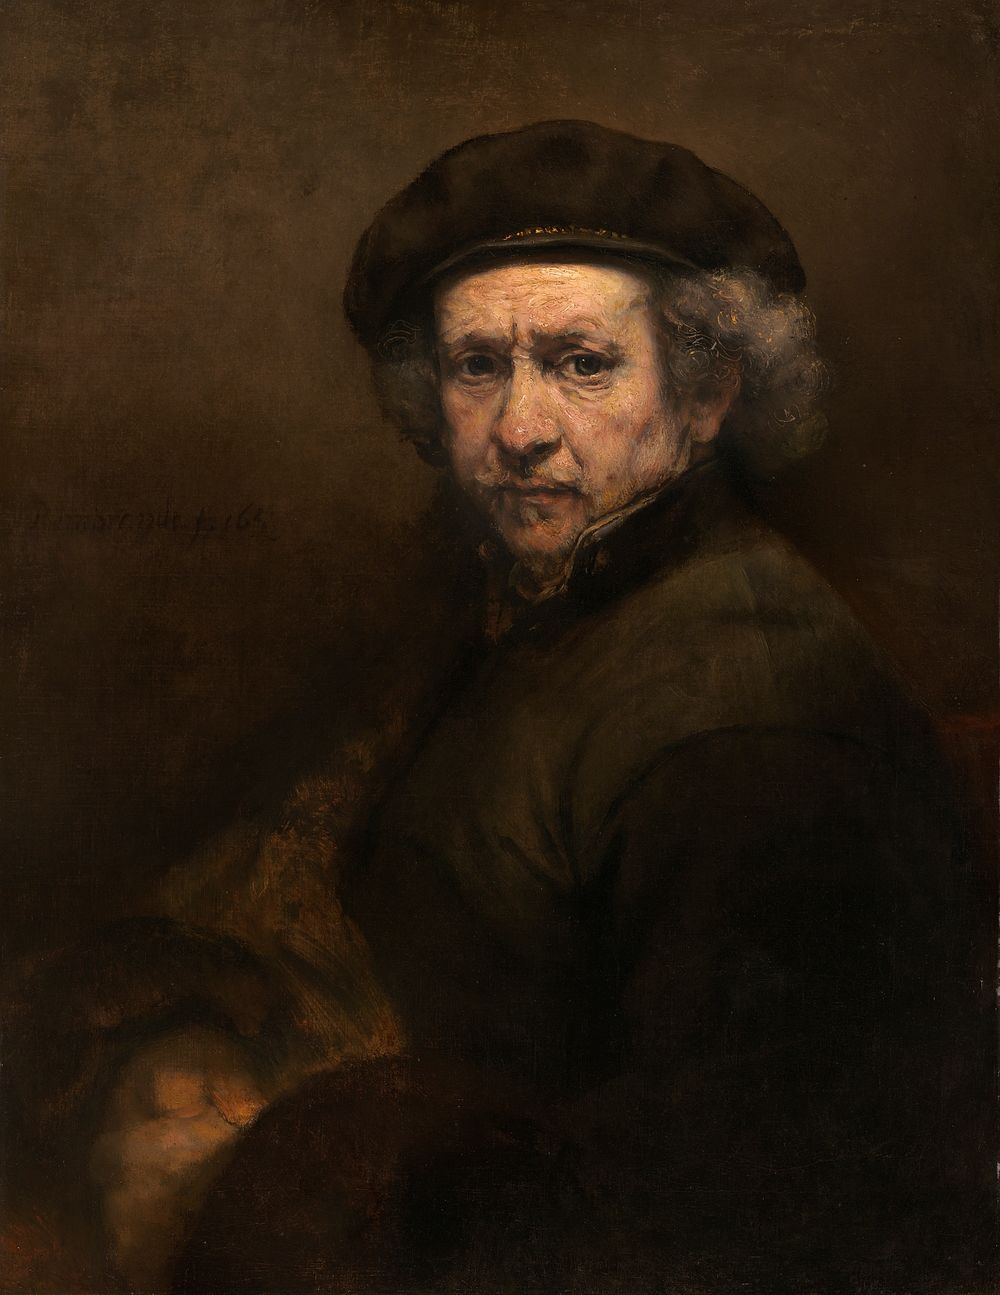 Rembrandt van Rijn's Self-Portrait 